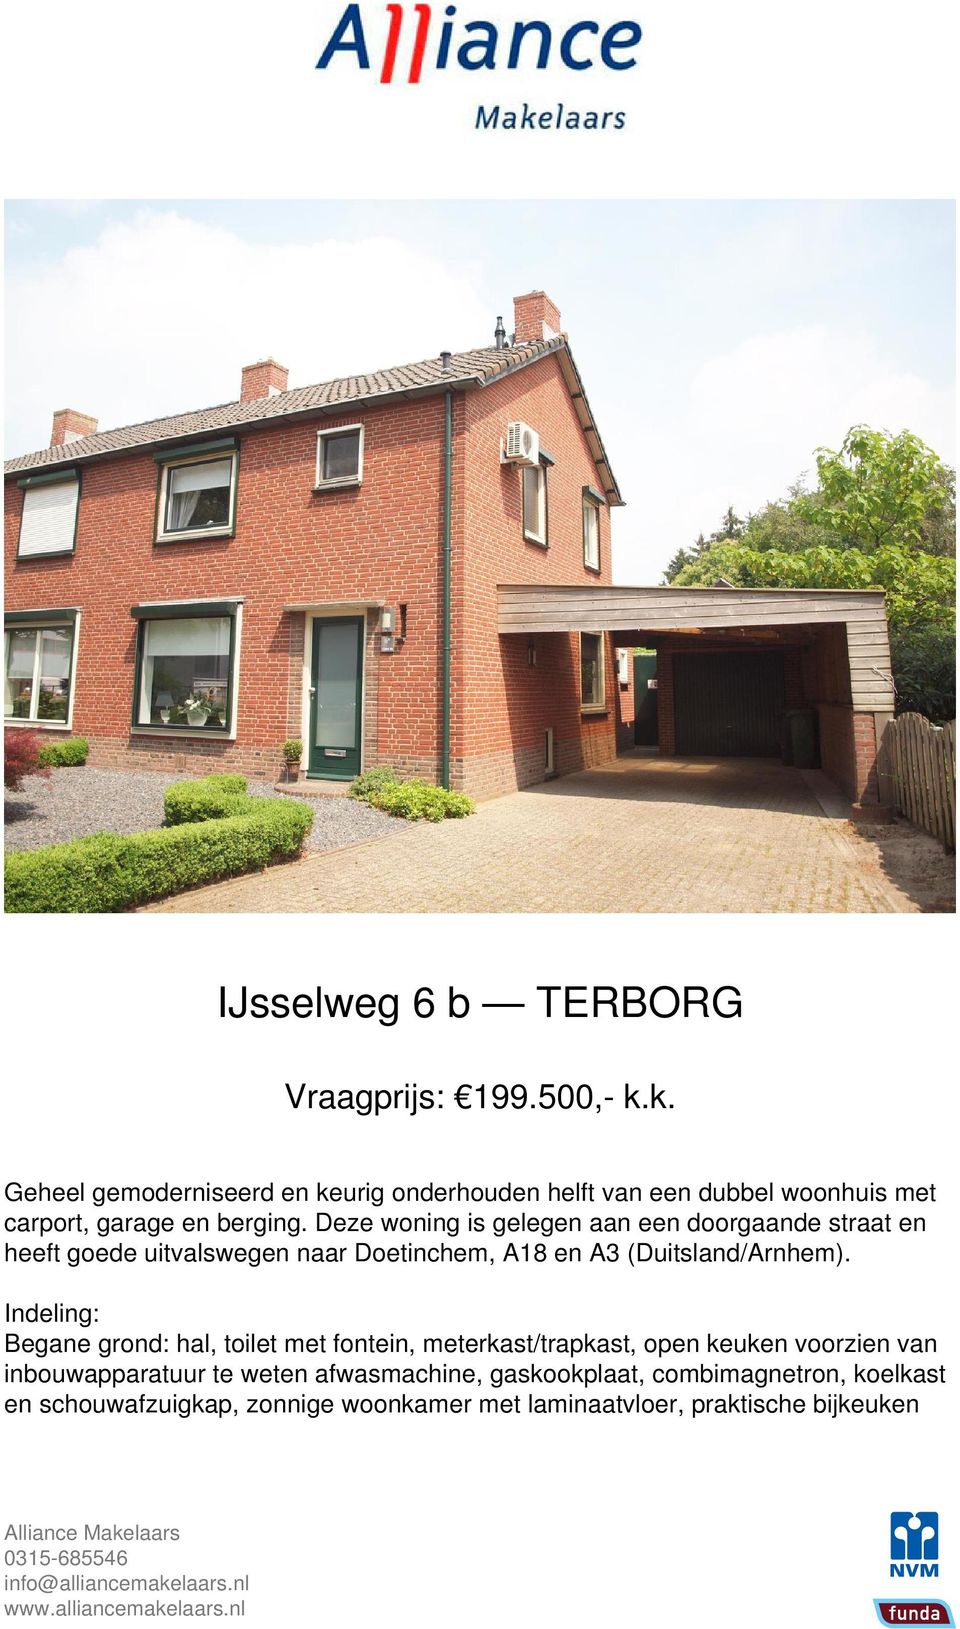 Deze woning is gelegen aan een doorgaande straat en heeft goede uitvalswegen naar Doetinchem, A18 en A3 (Duitsland/Arnhem).